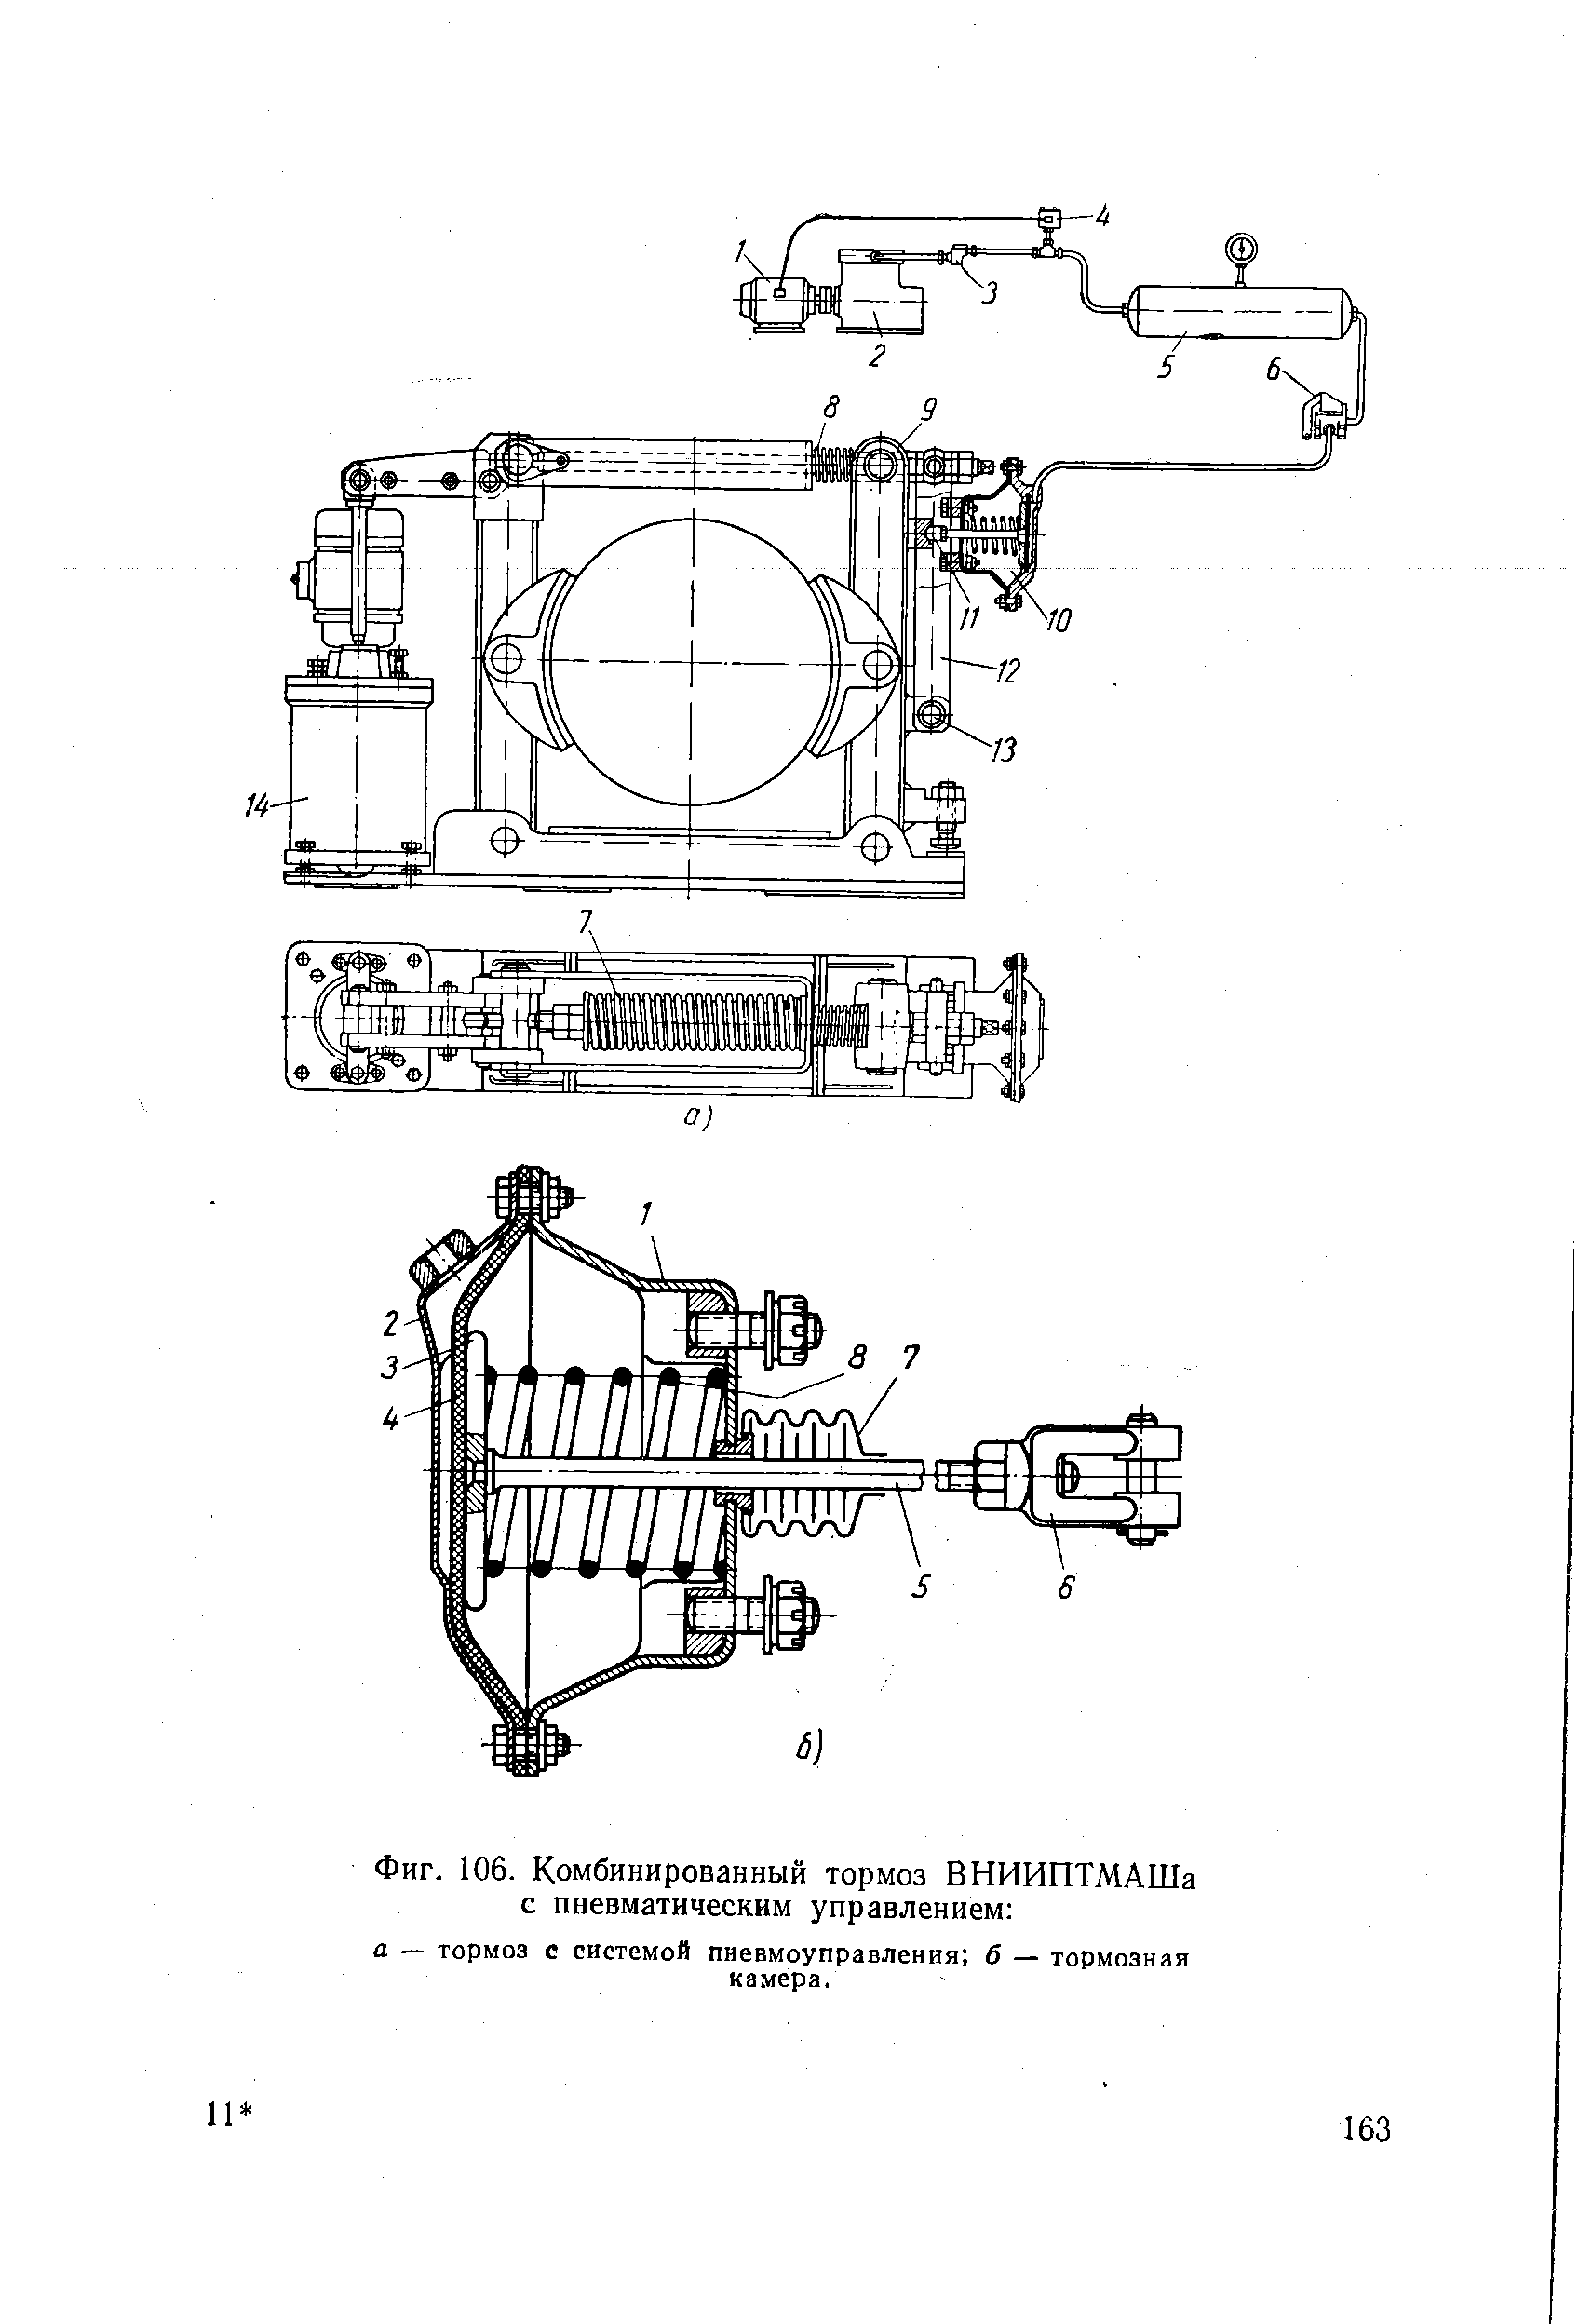 Фиг. 106. Комбинированный тормоз ВНИИПТМАШа с пневматическим управлением 
